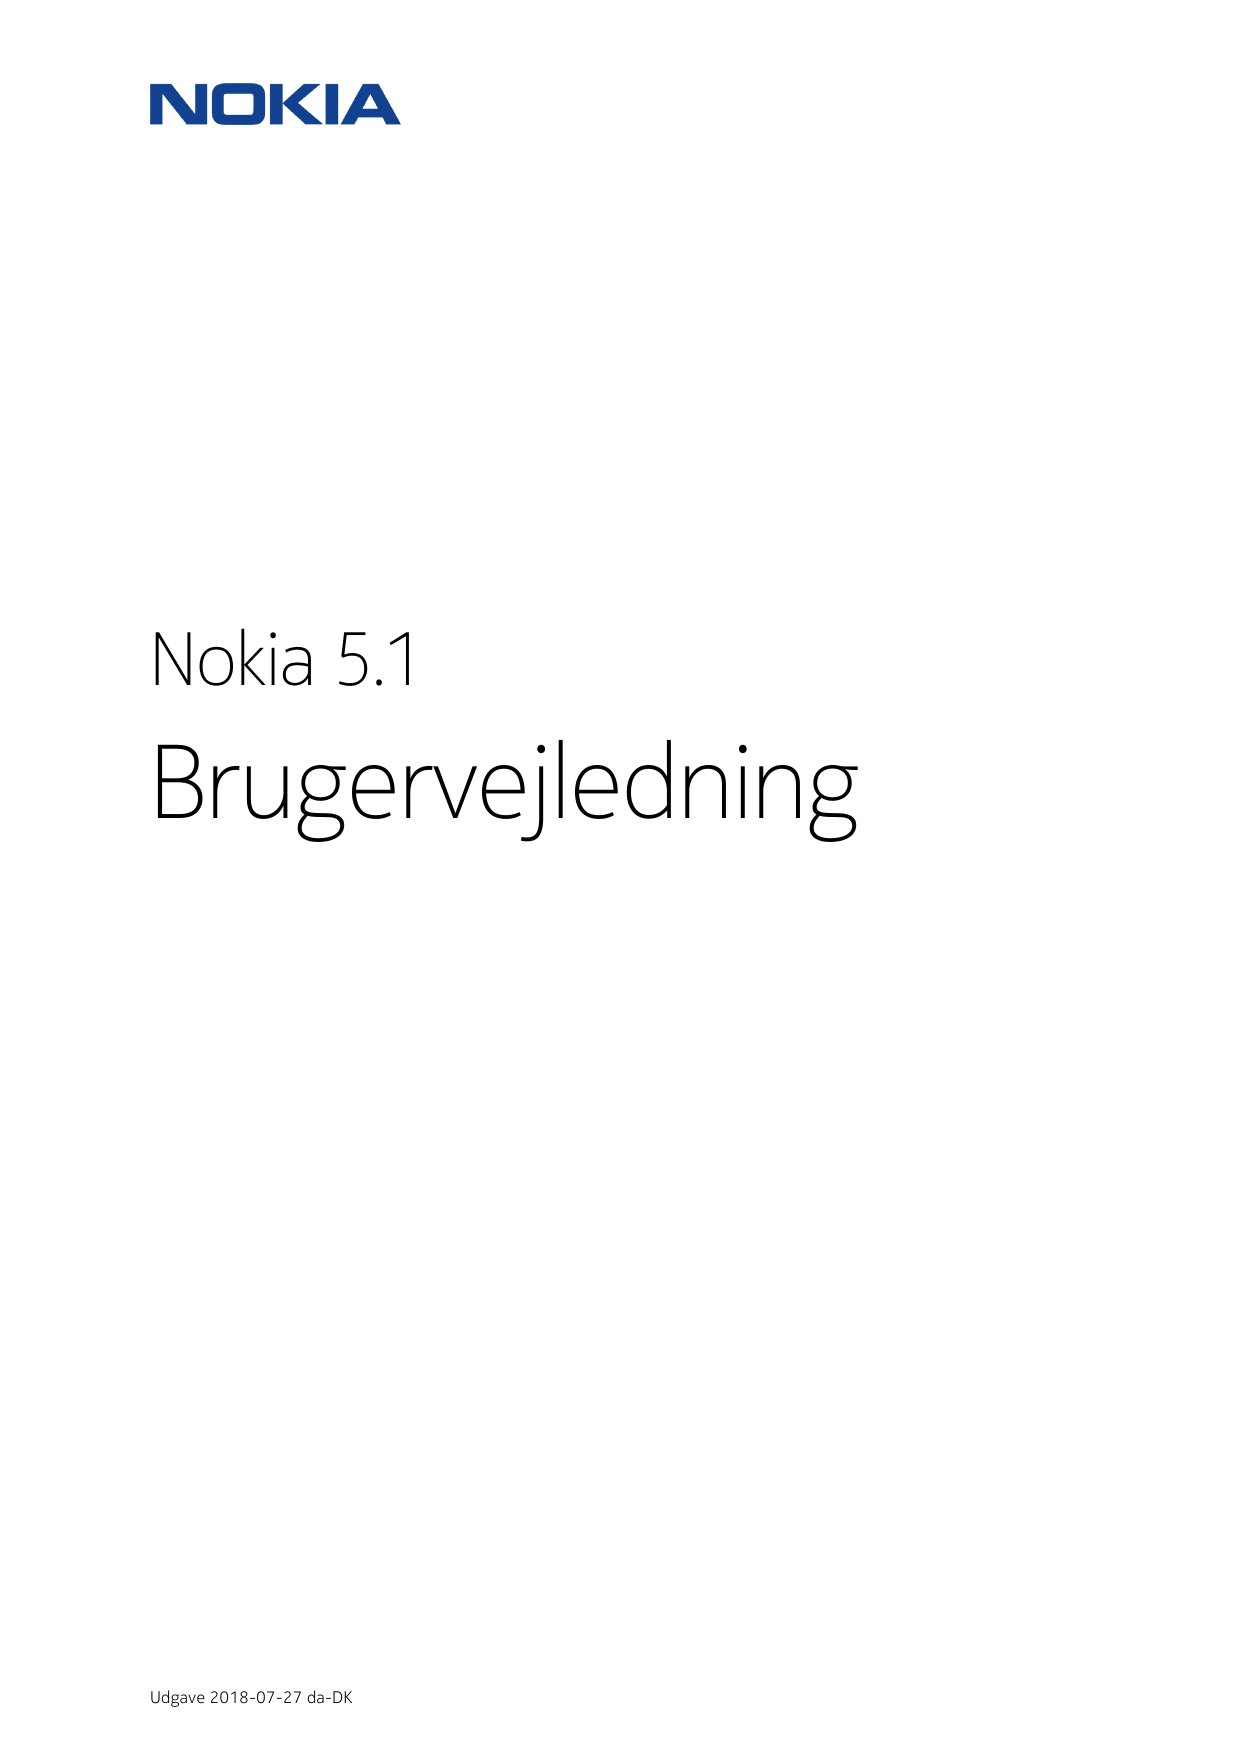 Nokia 5.1BrugervejledningUdgave 2018-07-27 da-DK